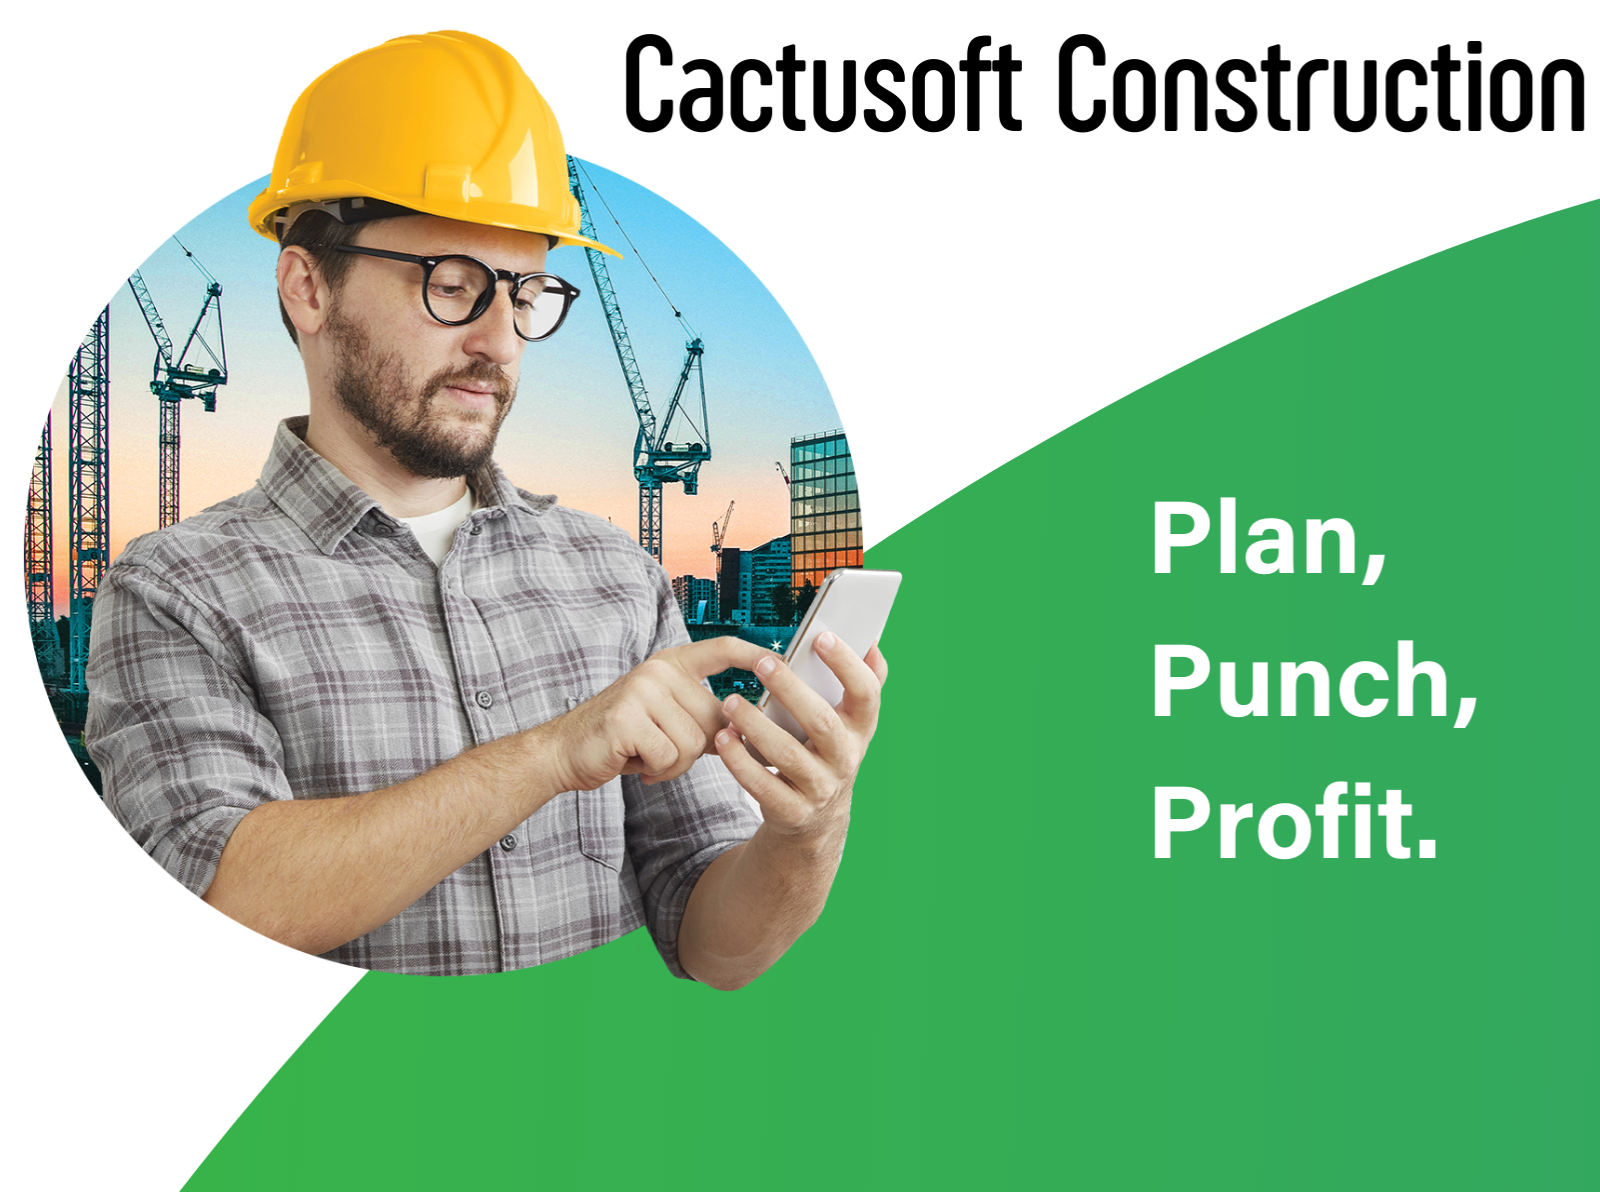 Cactusoft Construction bb13d87f-9faa-4de3-9f2d-7440ae9ea76e.png